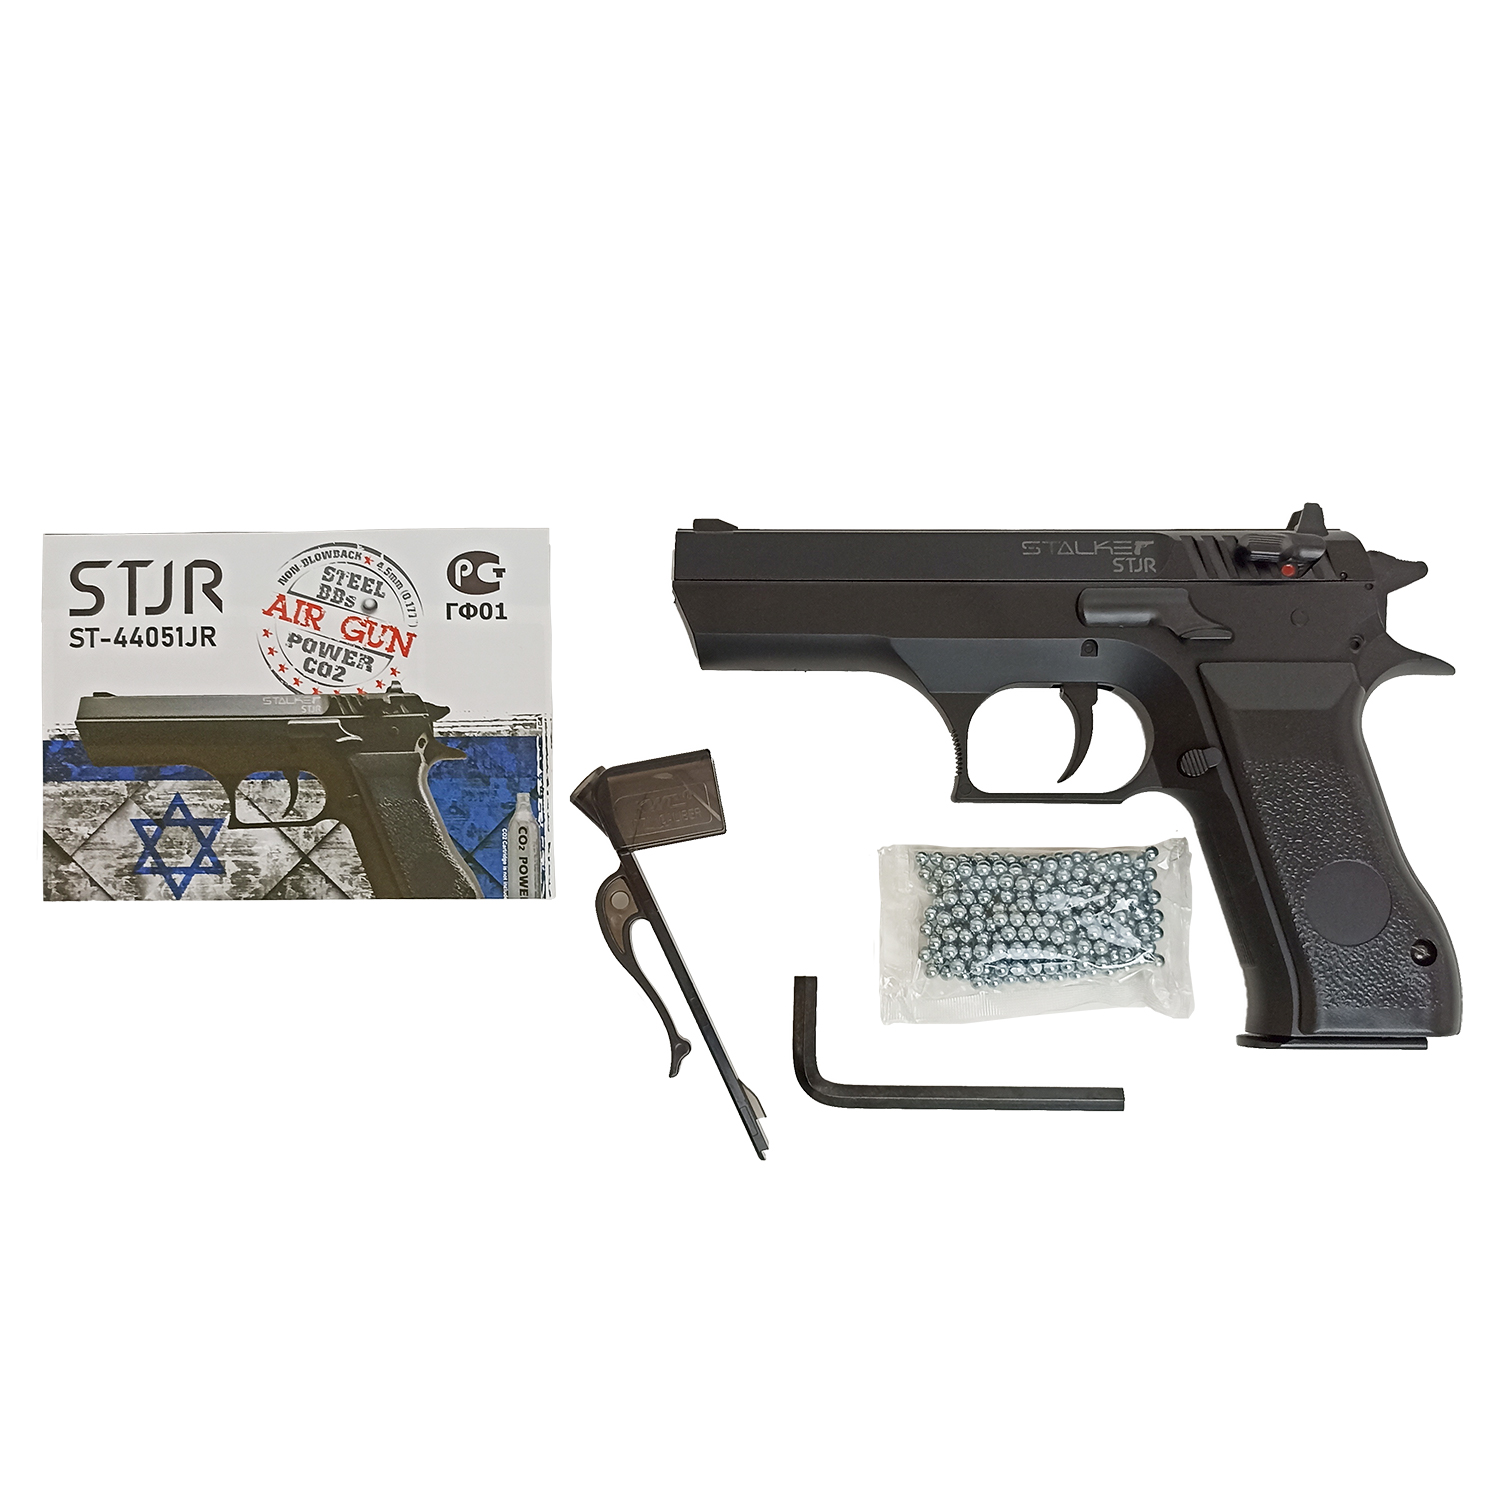 Пистолет пневматический Stalker STJR (аналог "Jericho 941"), калибр 4,5 мм